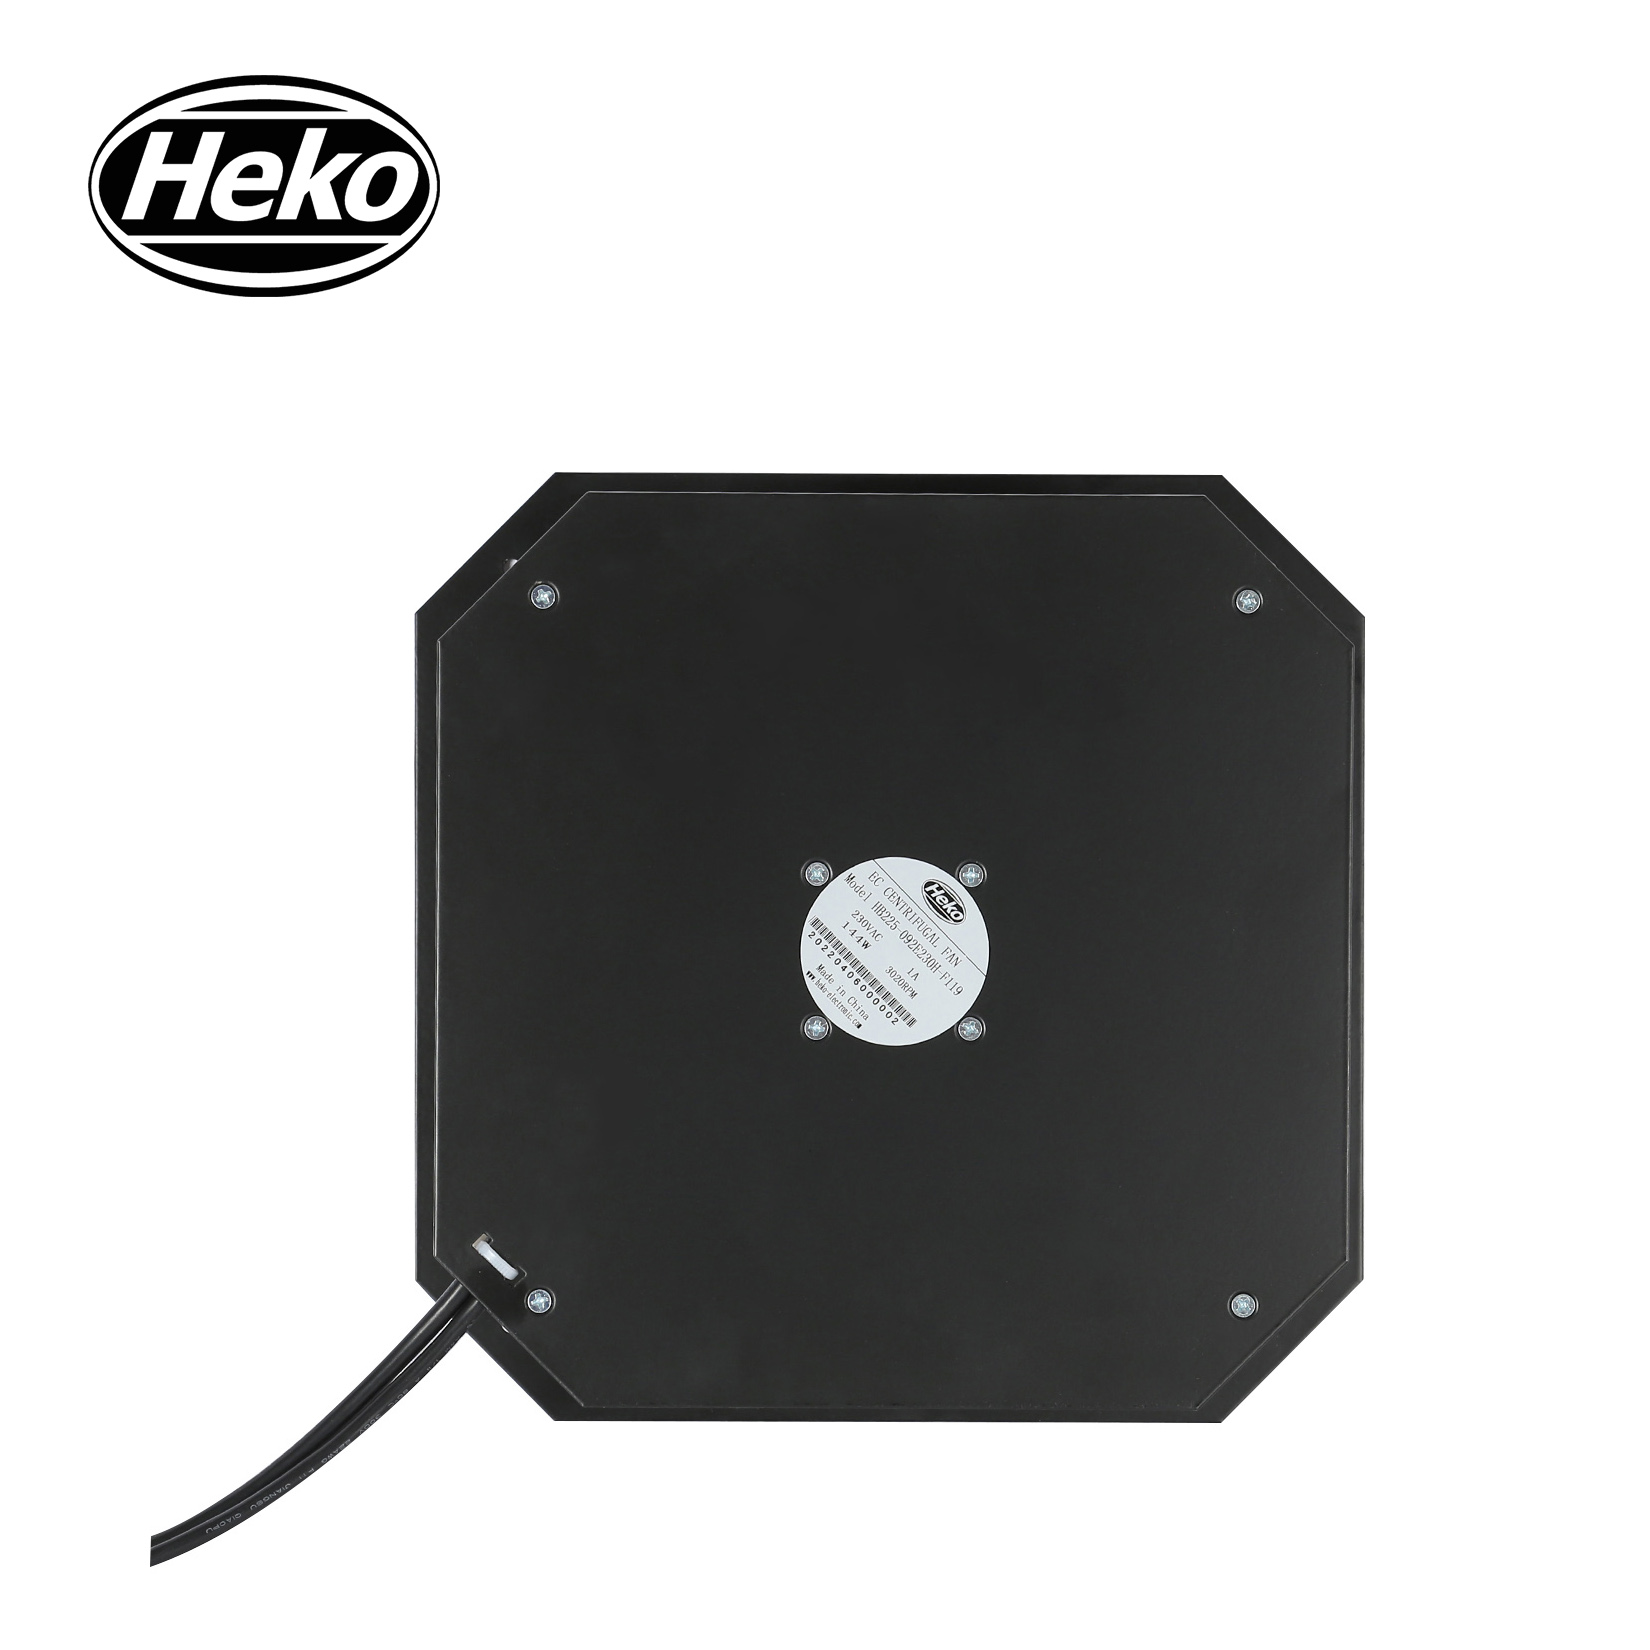 HEKO EC225mm Duct Industrial Backward Centrifugal Fan 